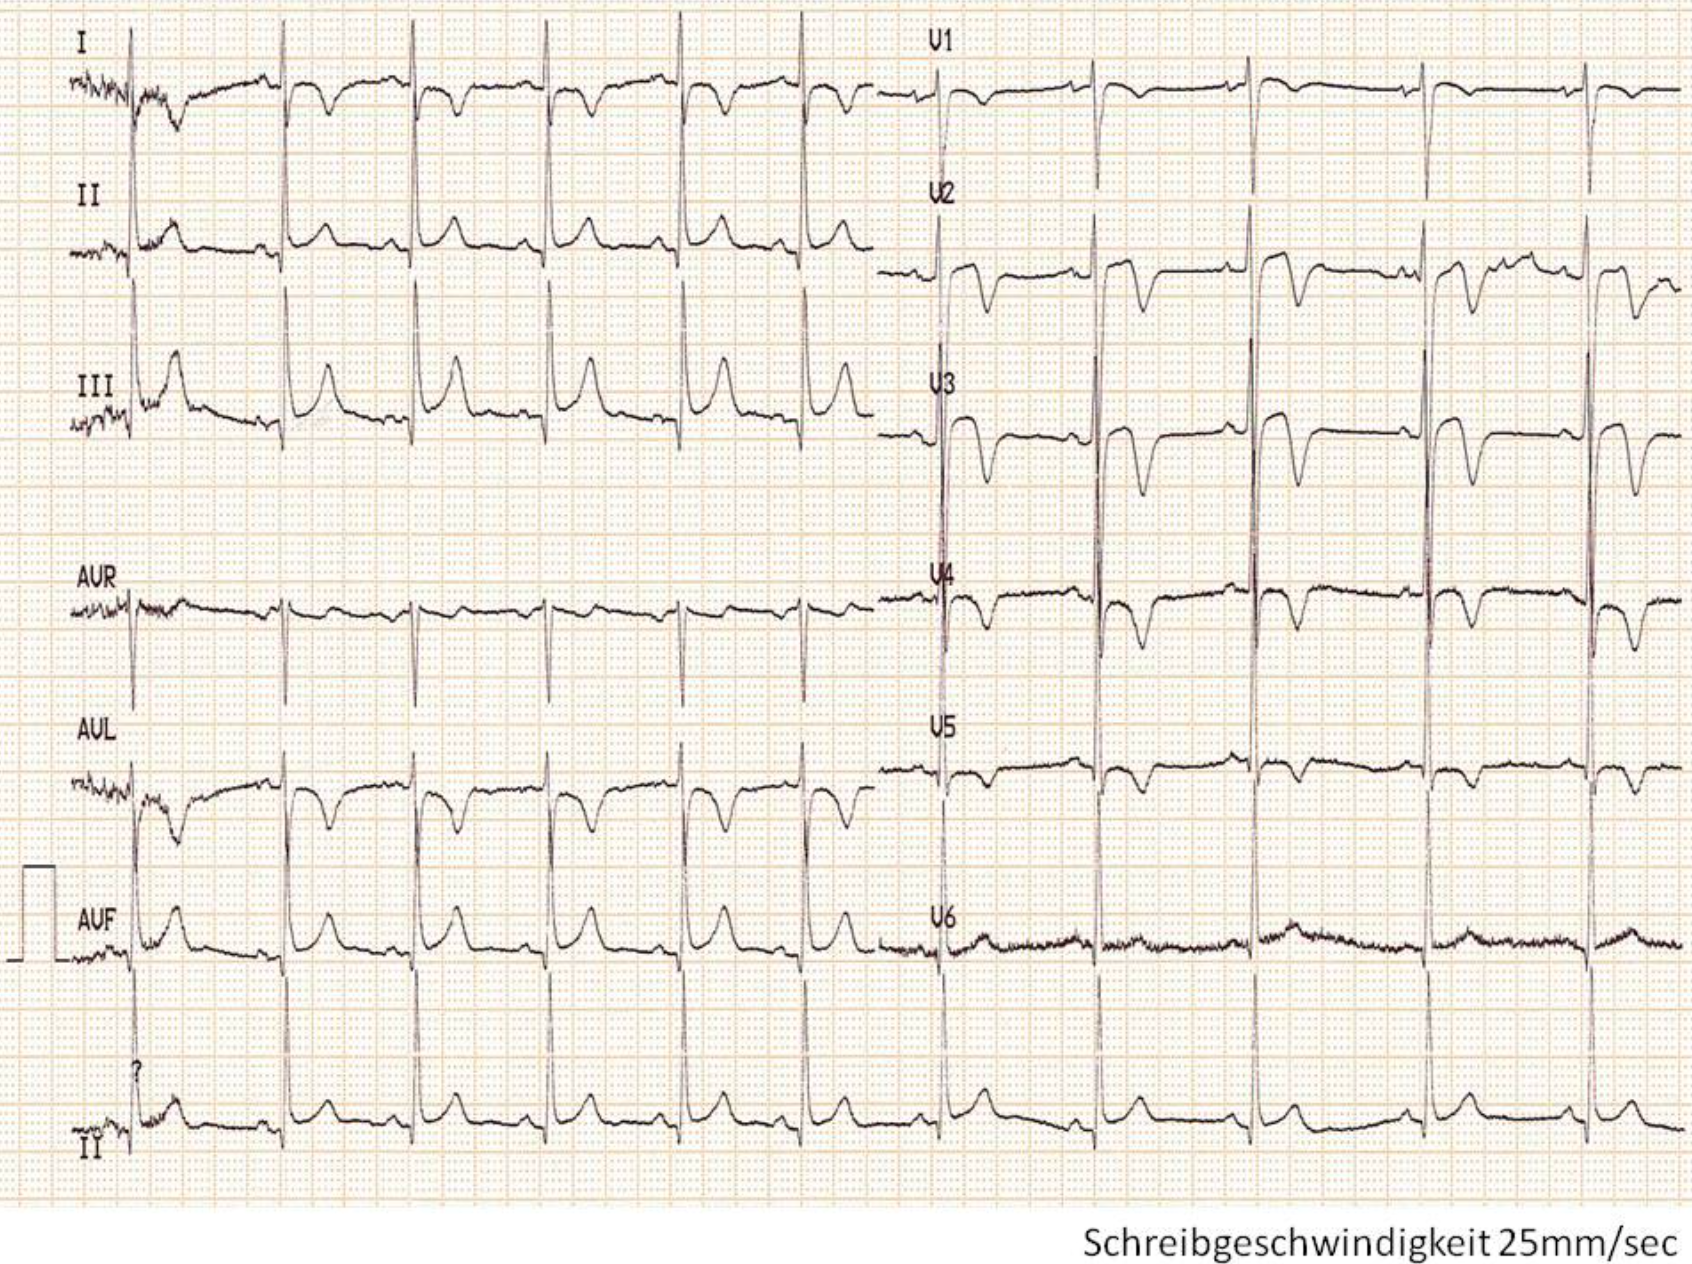 Graph der Ableitungen (I, II, III, aVR, aVL, aVF, V1-V6) eines 12-Kanal-EKGs 